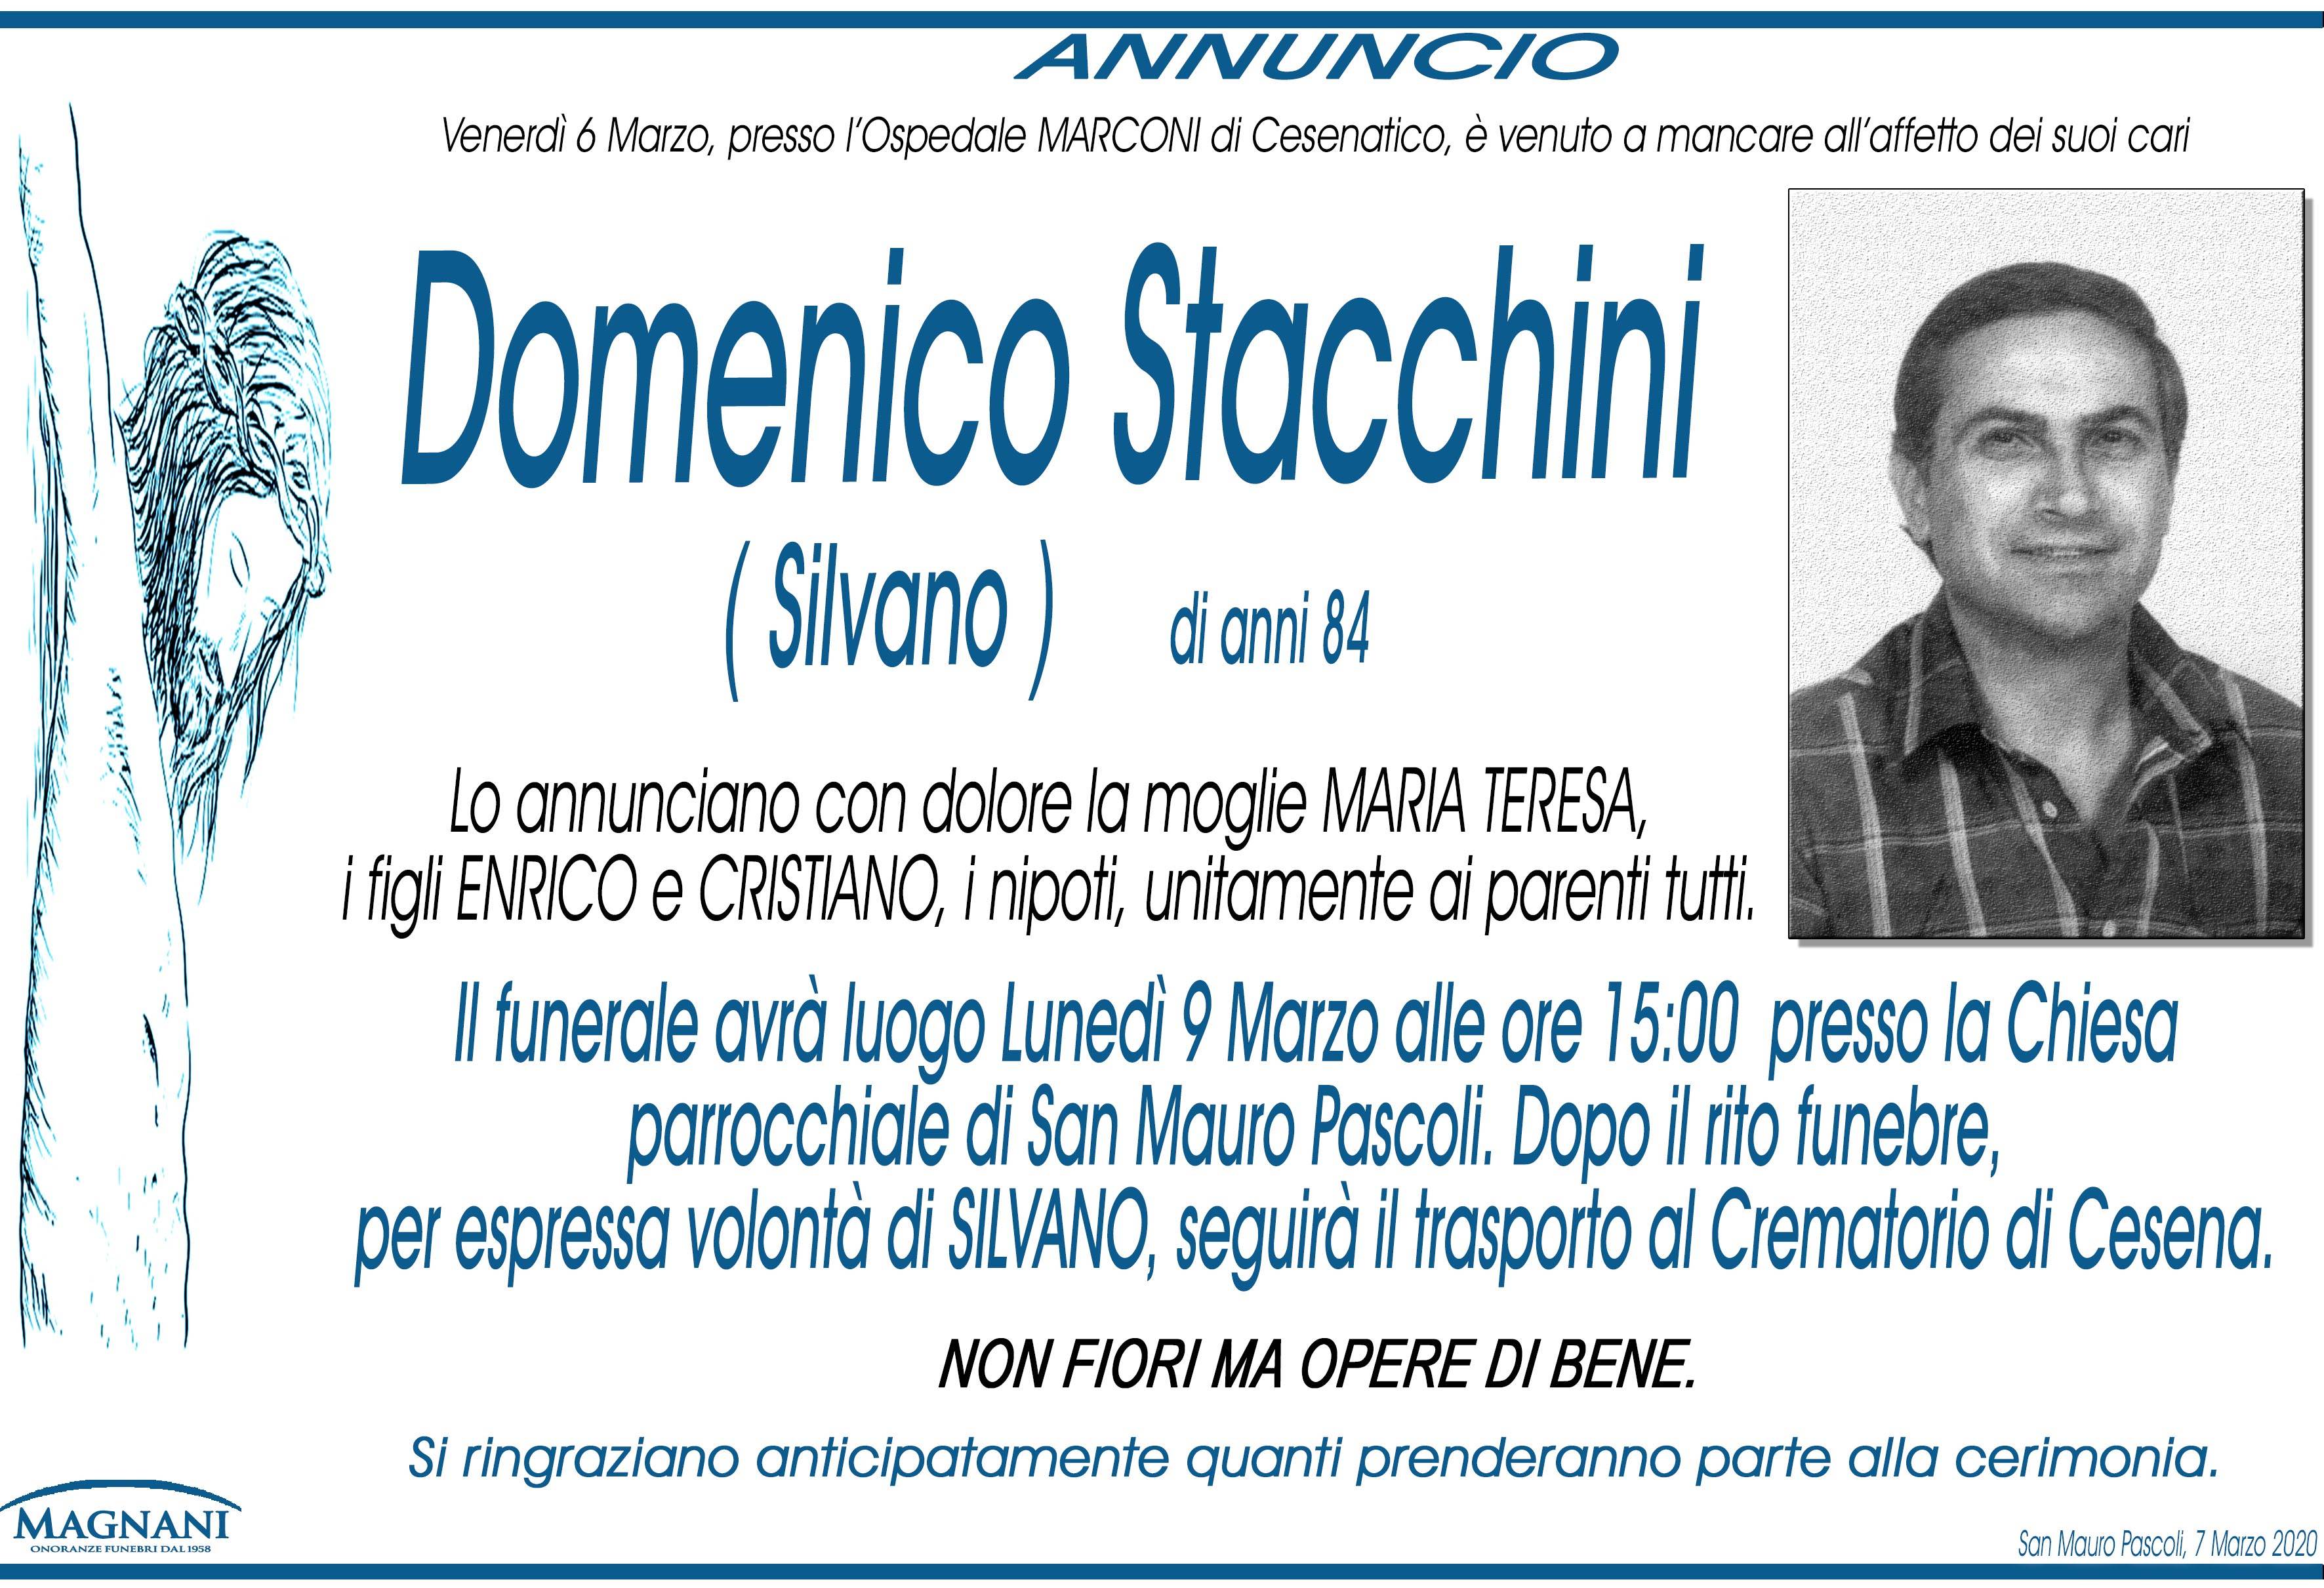 Domenico Stacchini